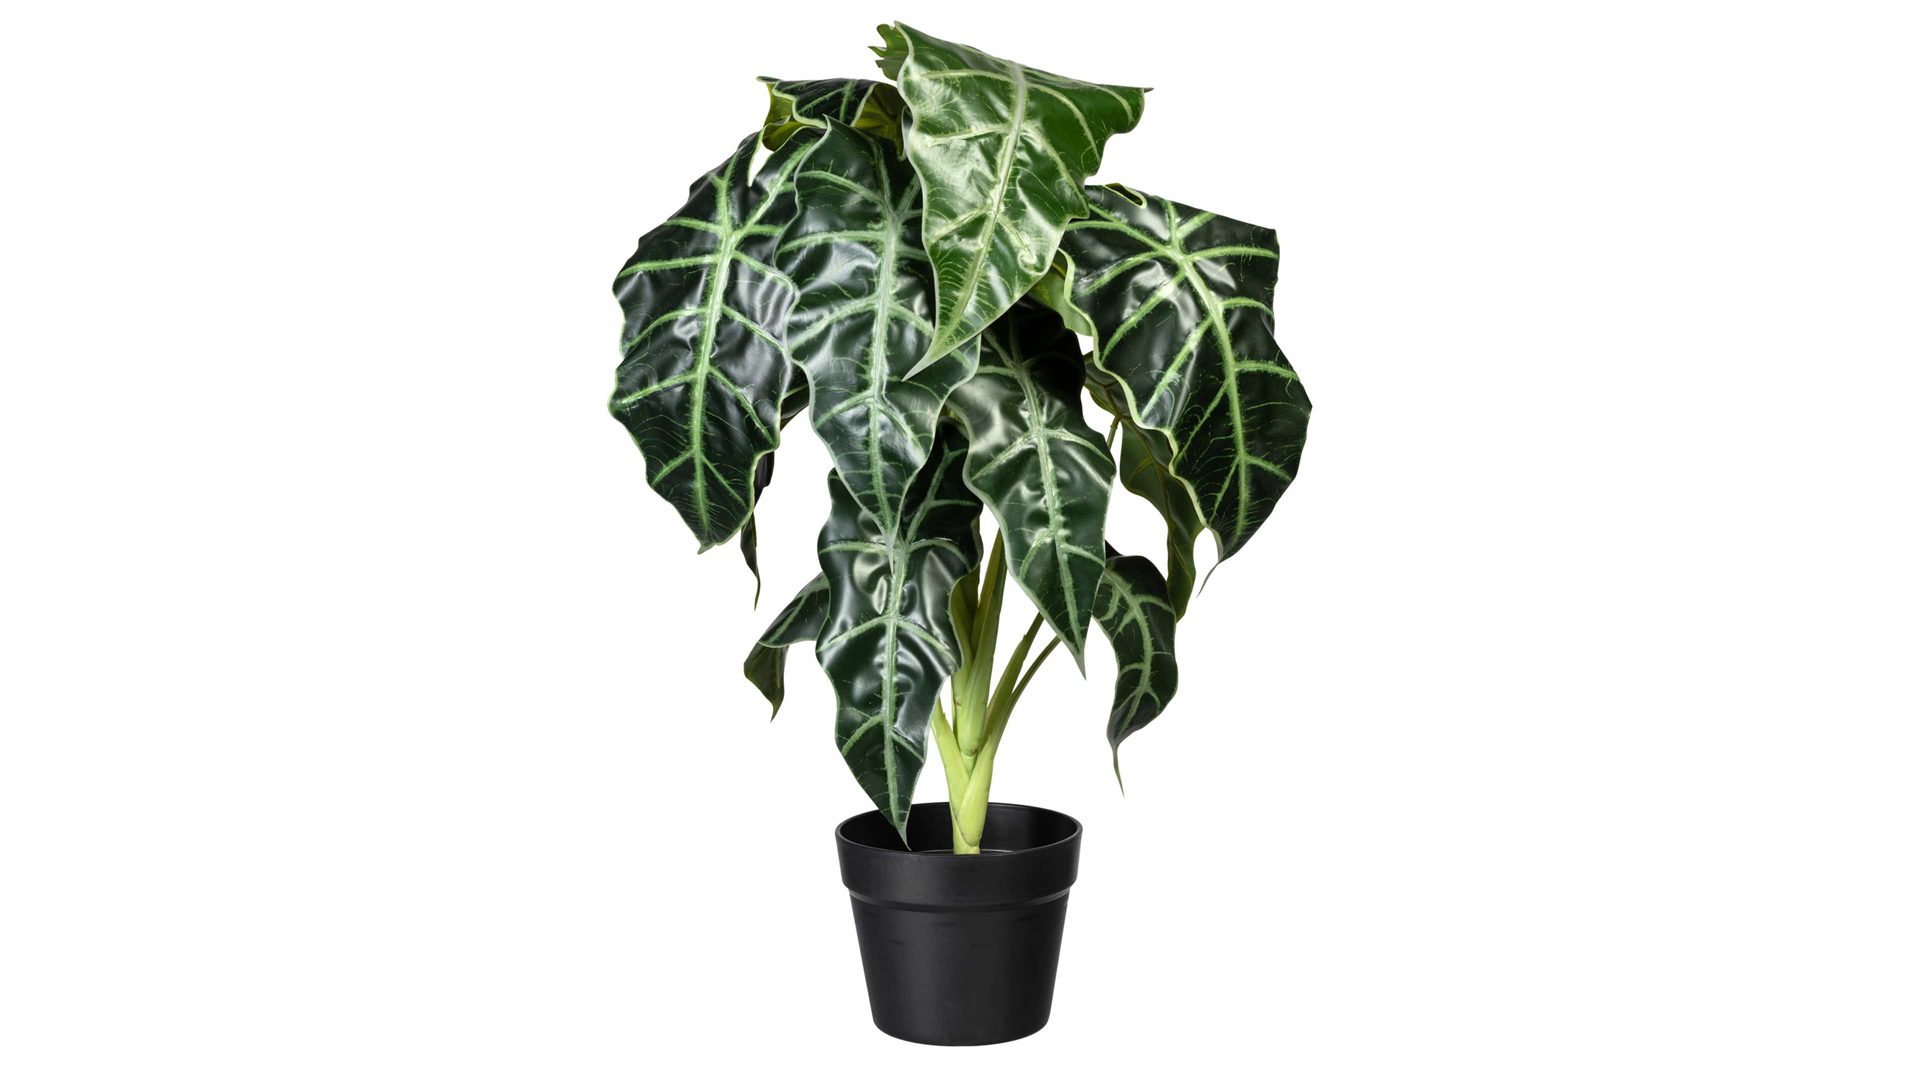 Pflanze Gasper aus Kunststoff in Grün Elefantenohr Alocasia grün-weißer Kunststoff & schwarzer Topf – Höhe ca. 60 cm